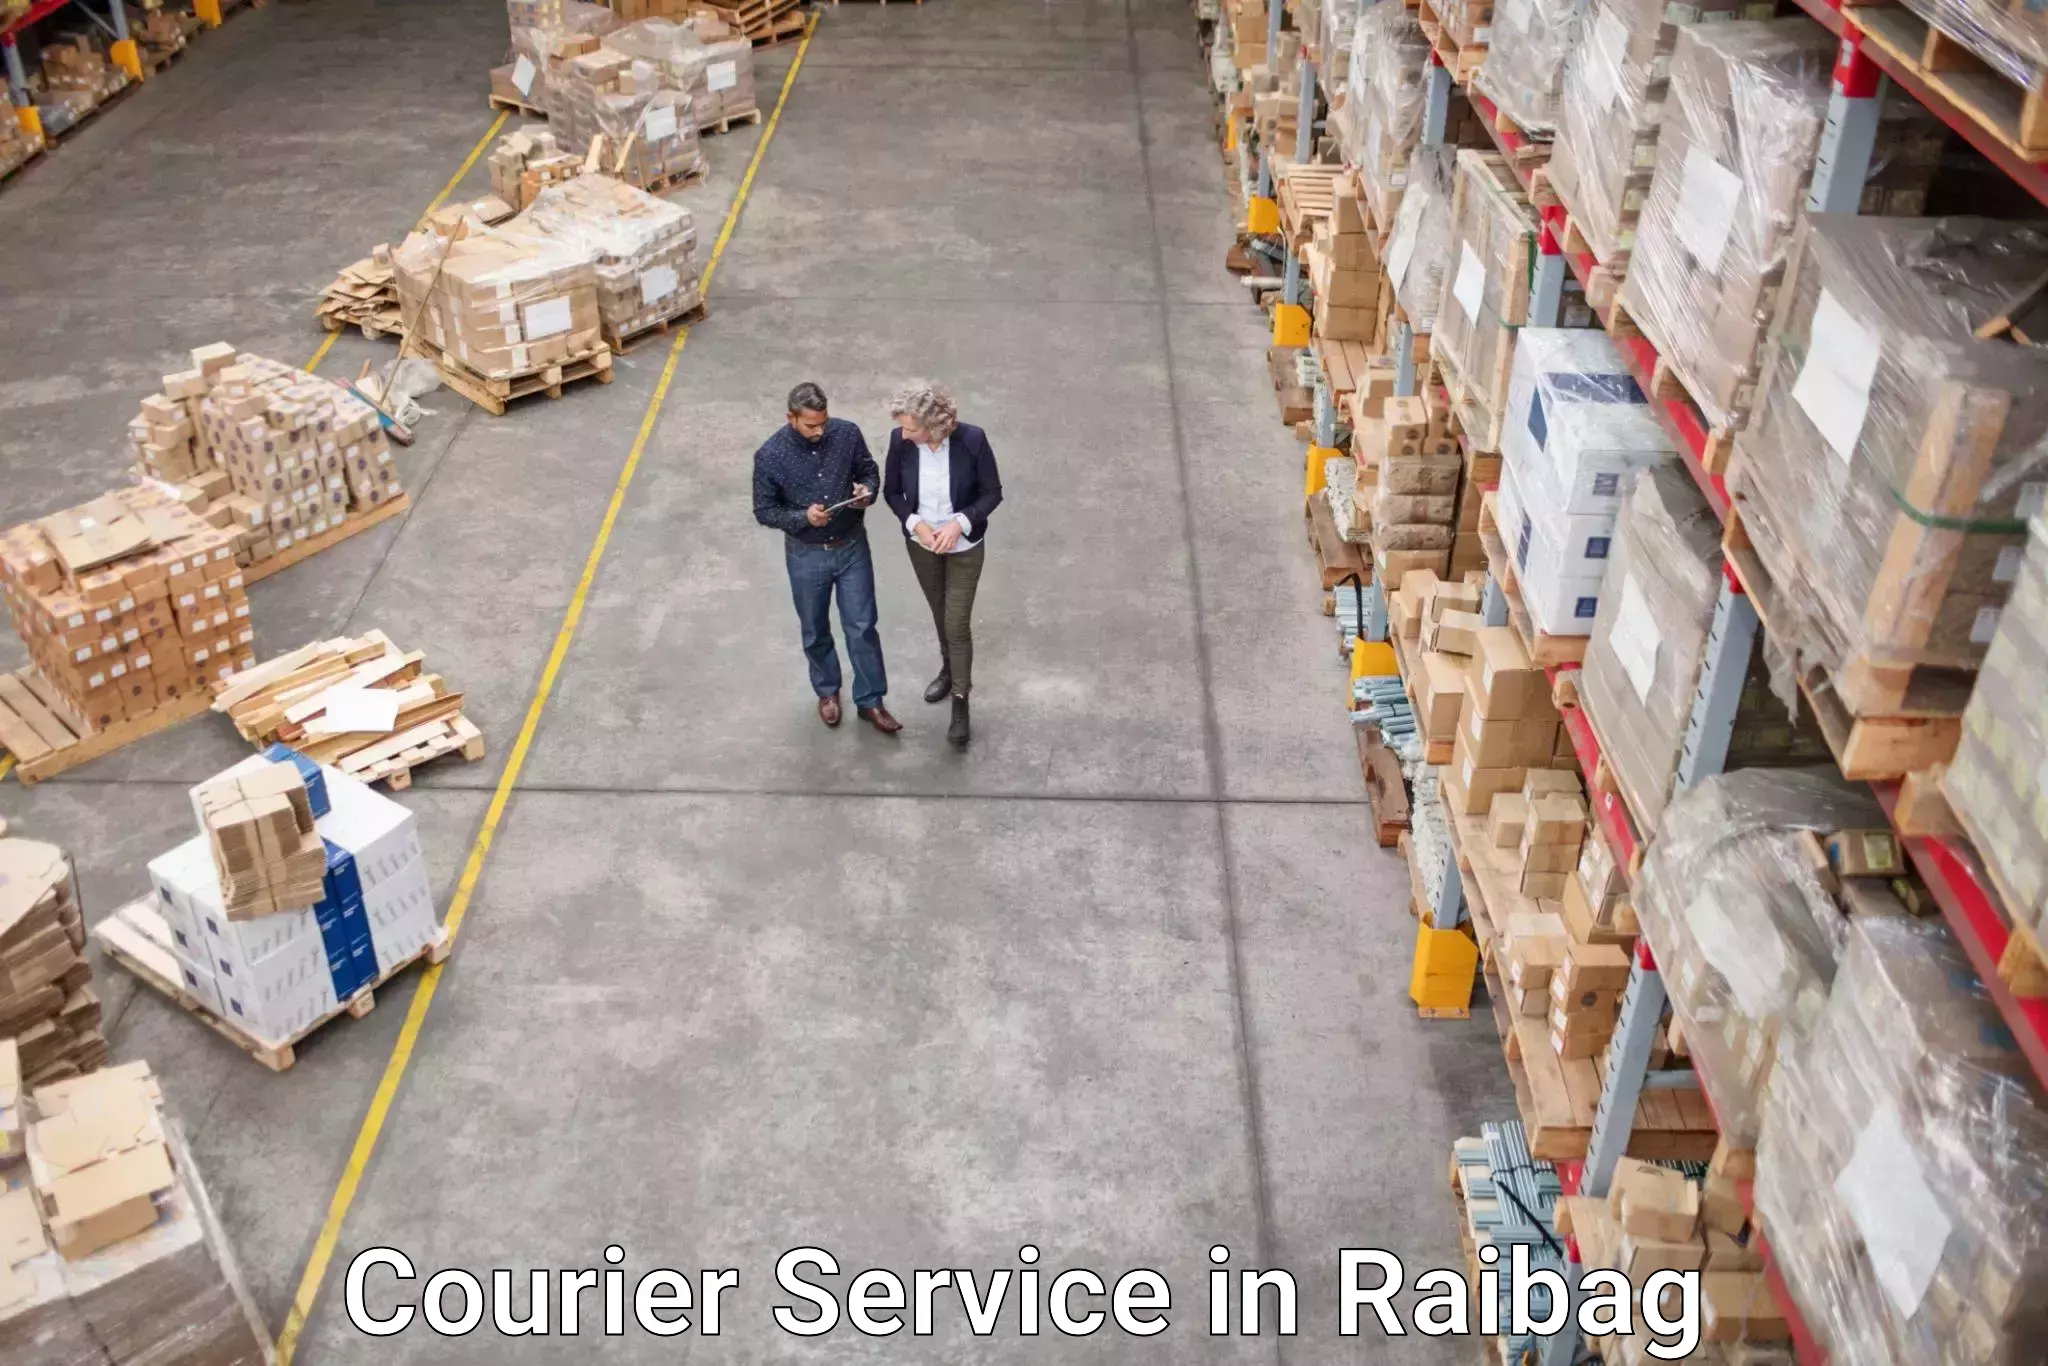 Affordable parcel service in Raibag